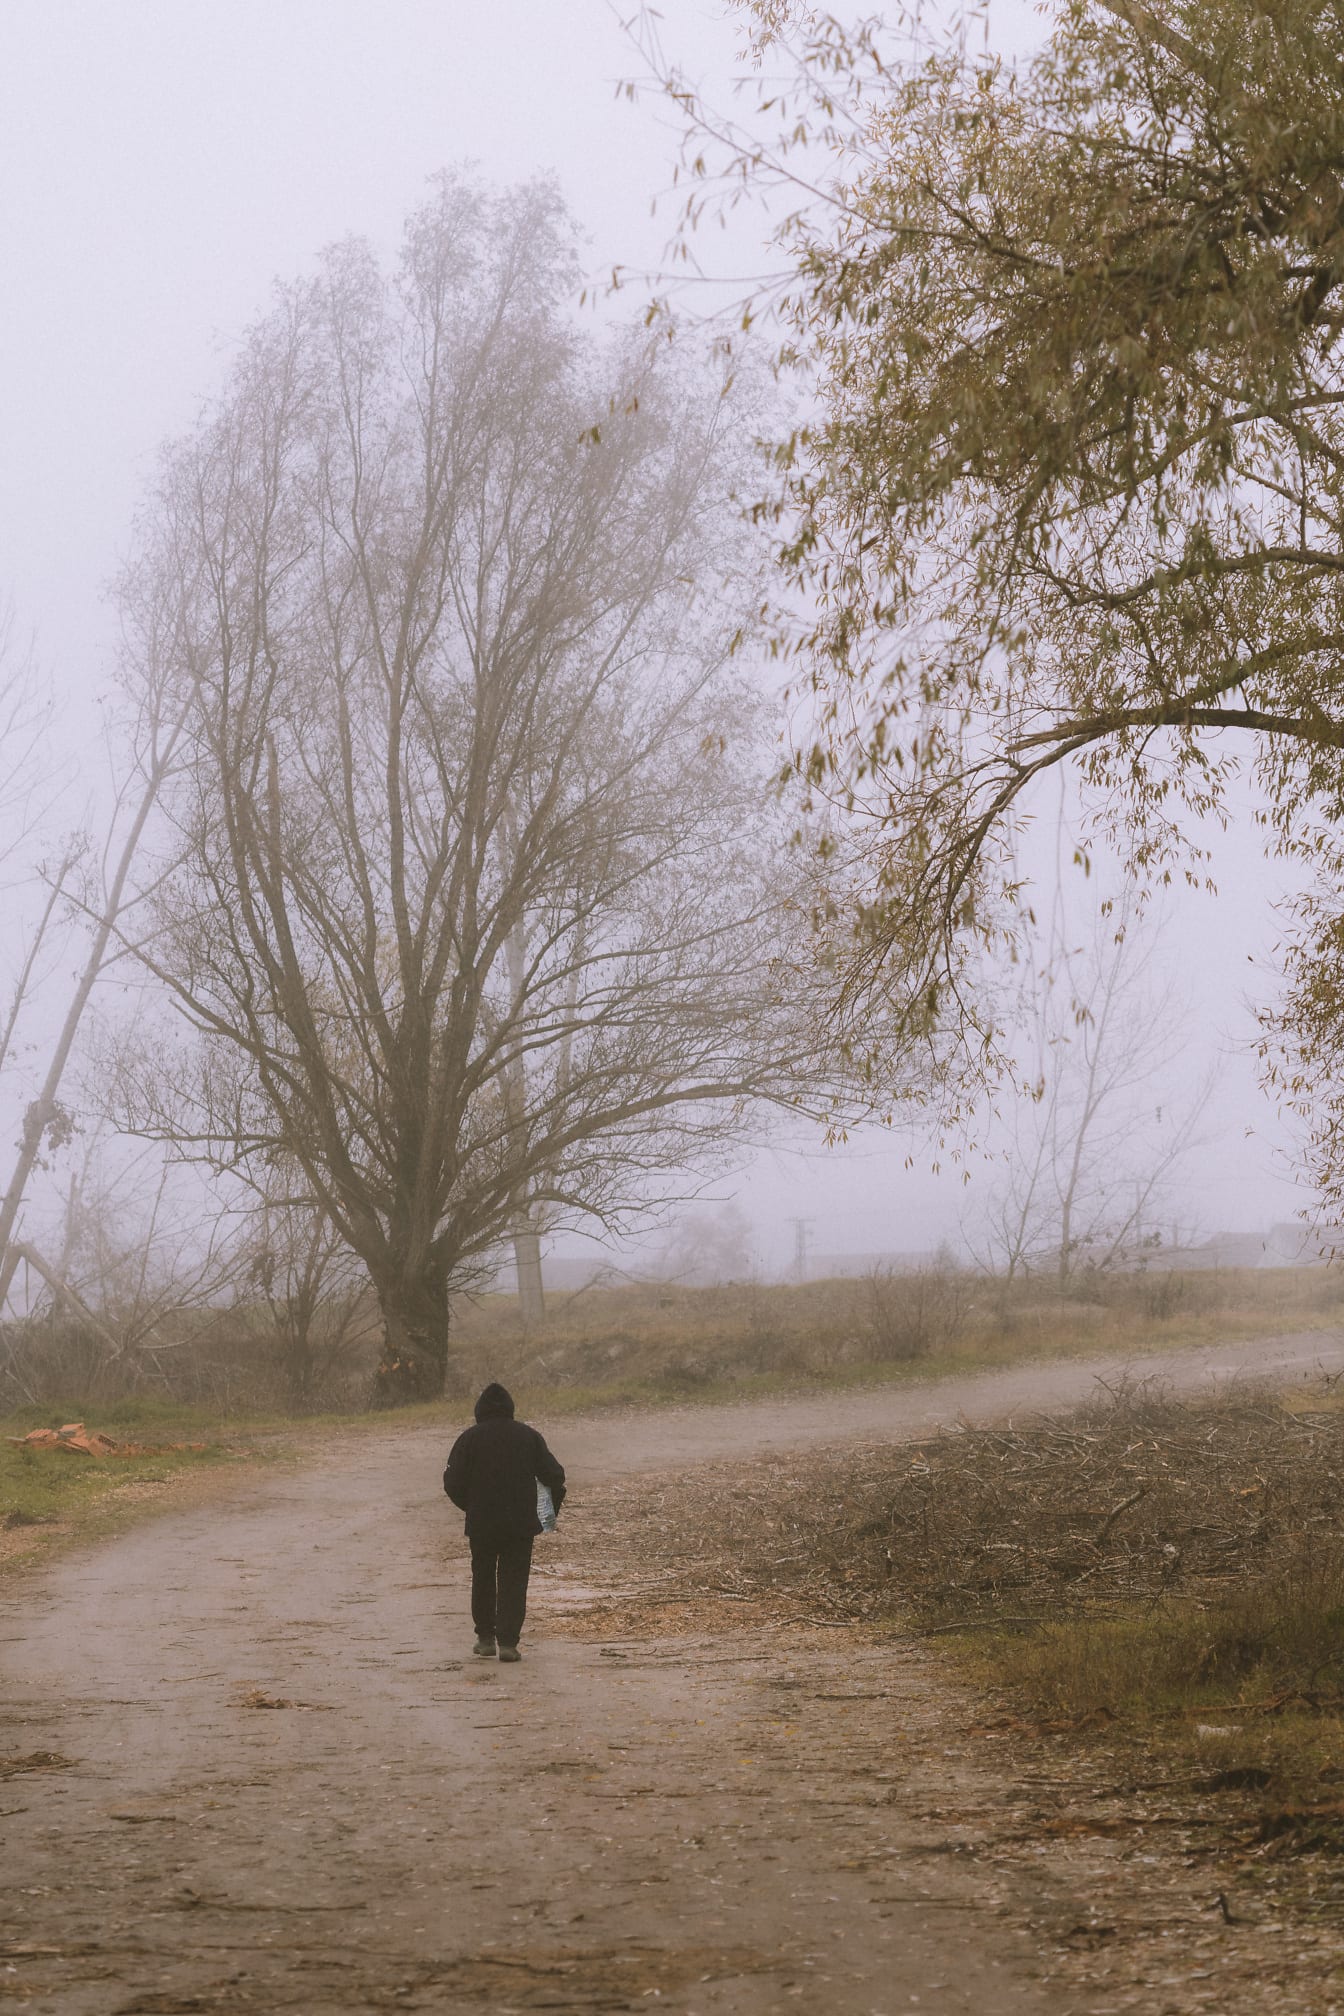 Άτομο που περπατά σε χωματόδρομο με δέντρα στο βάθος σε ομιχλώδη μέρα